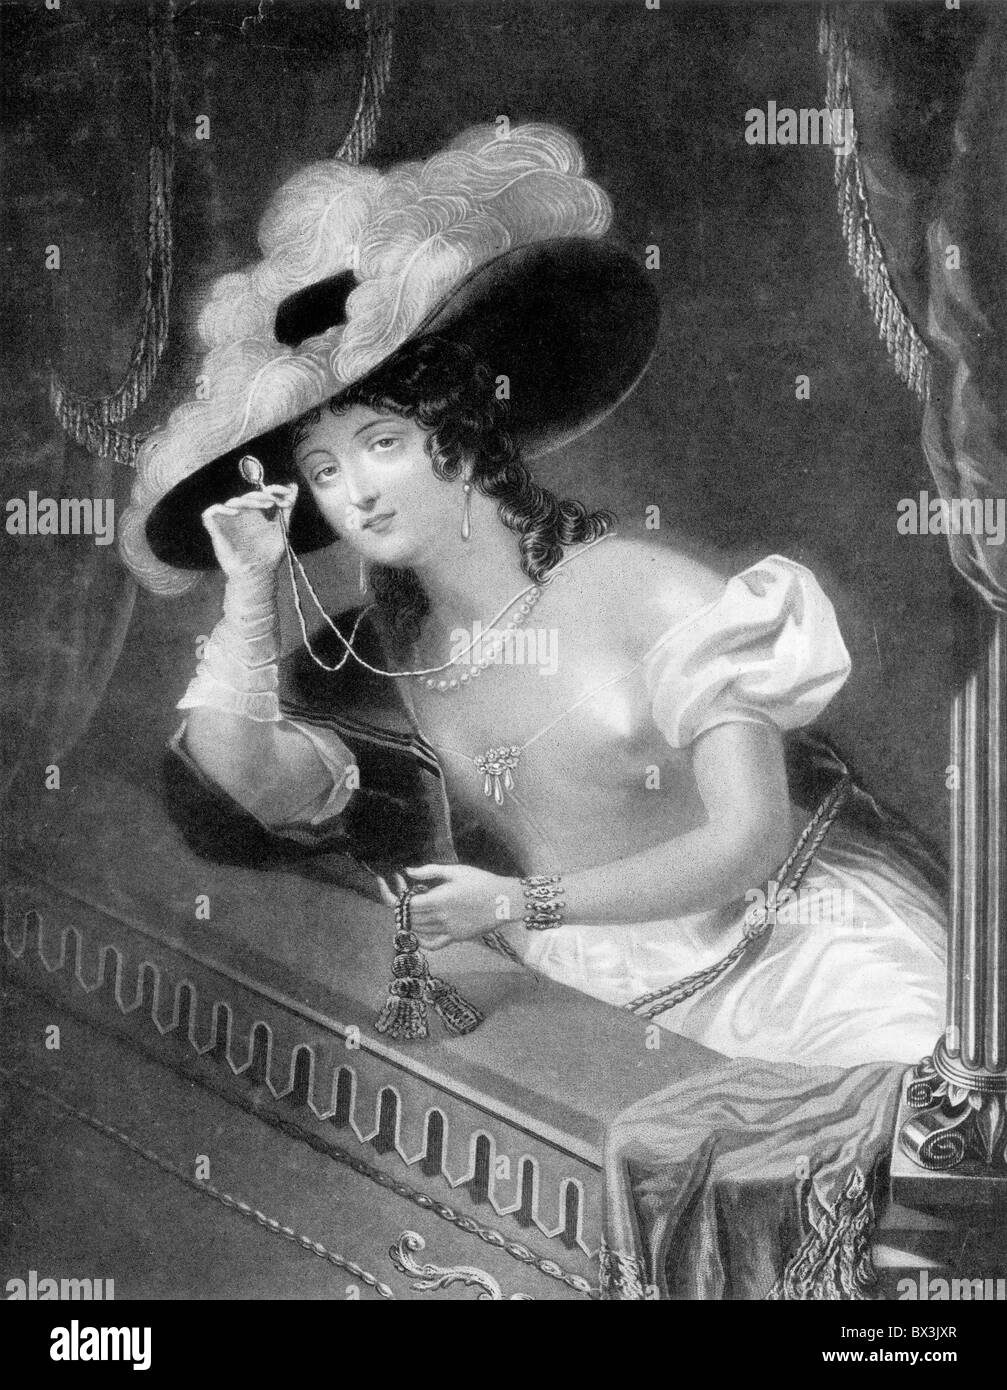 Una dama en la ópera, dibujado por Harper, grabado por Huffam; ilustración en blanco y negro. Foto de stock